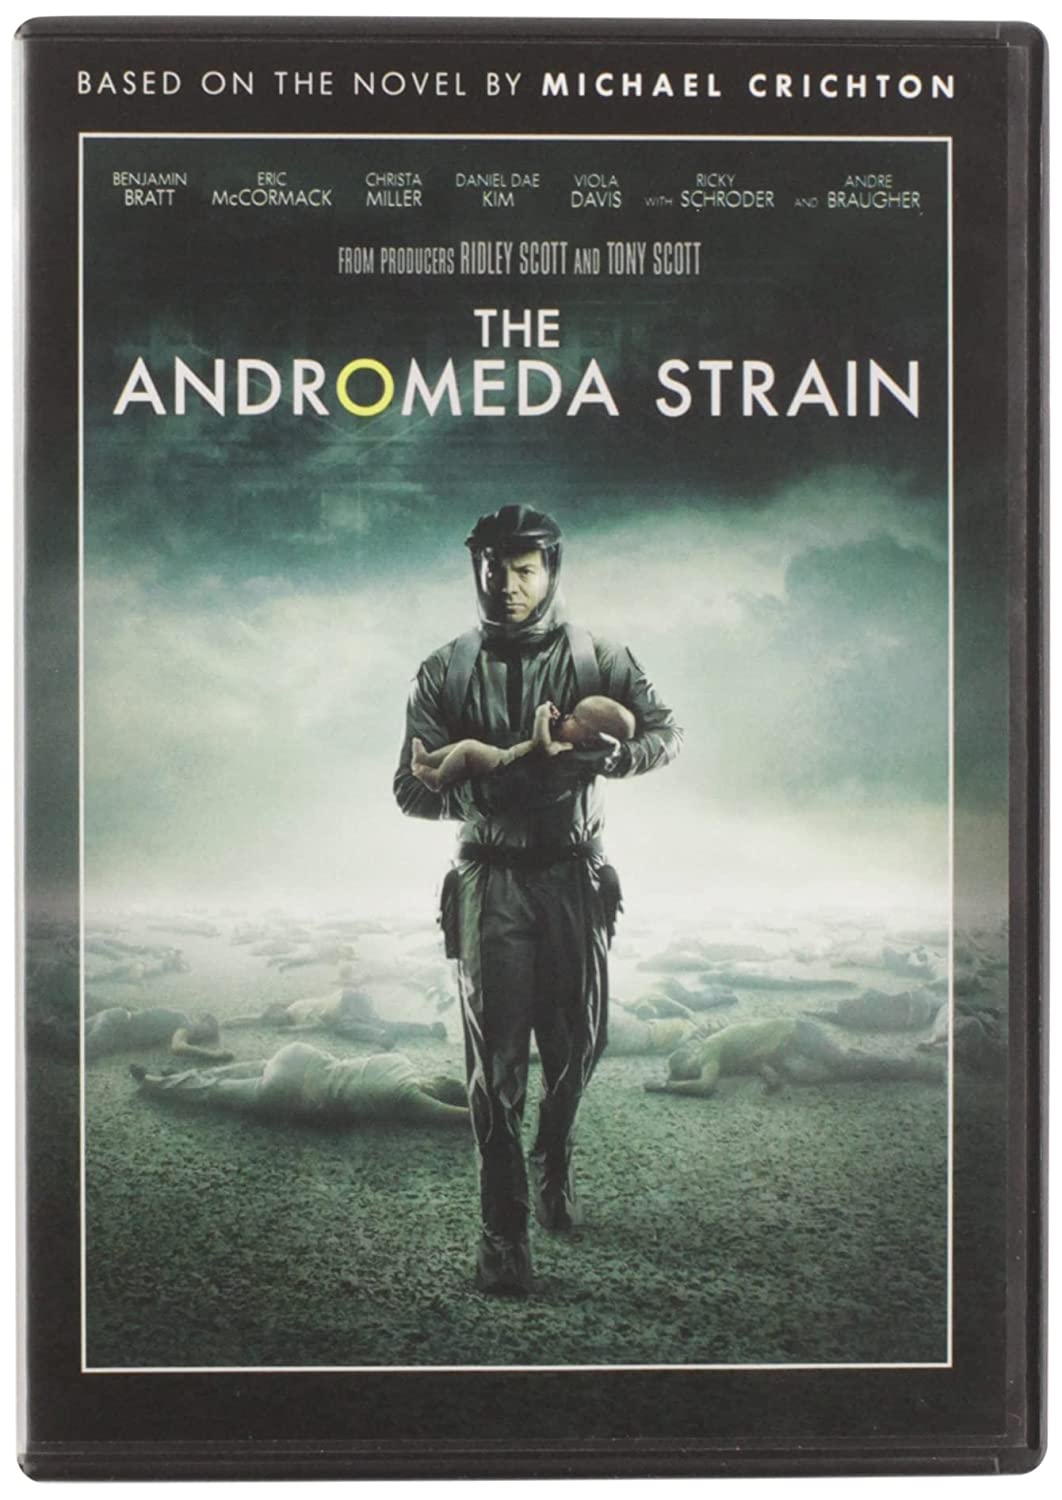 The Andromeda Strain - Darkside Records